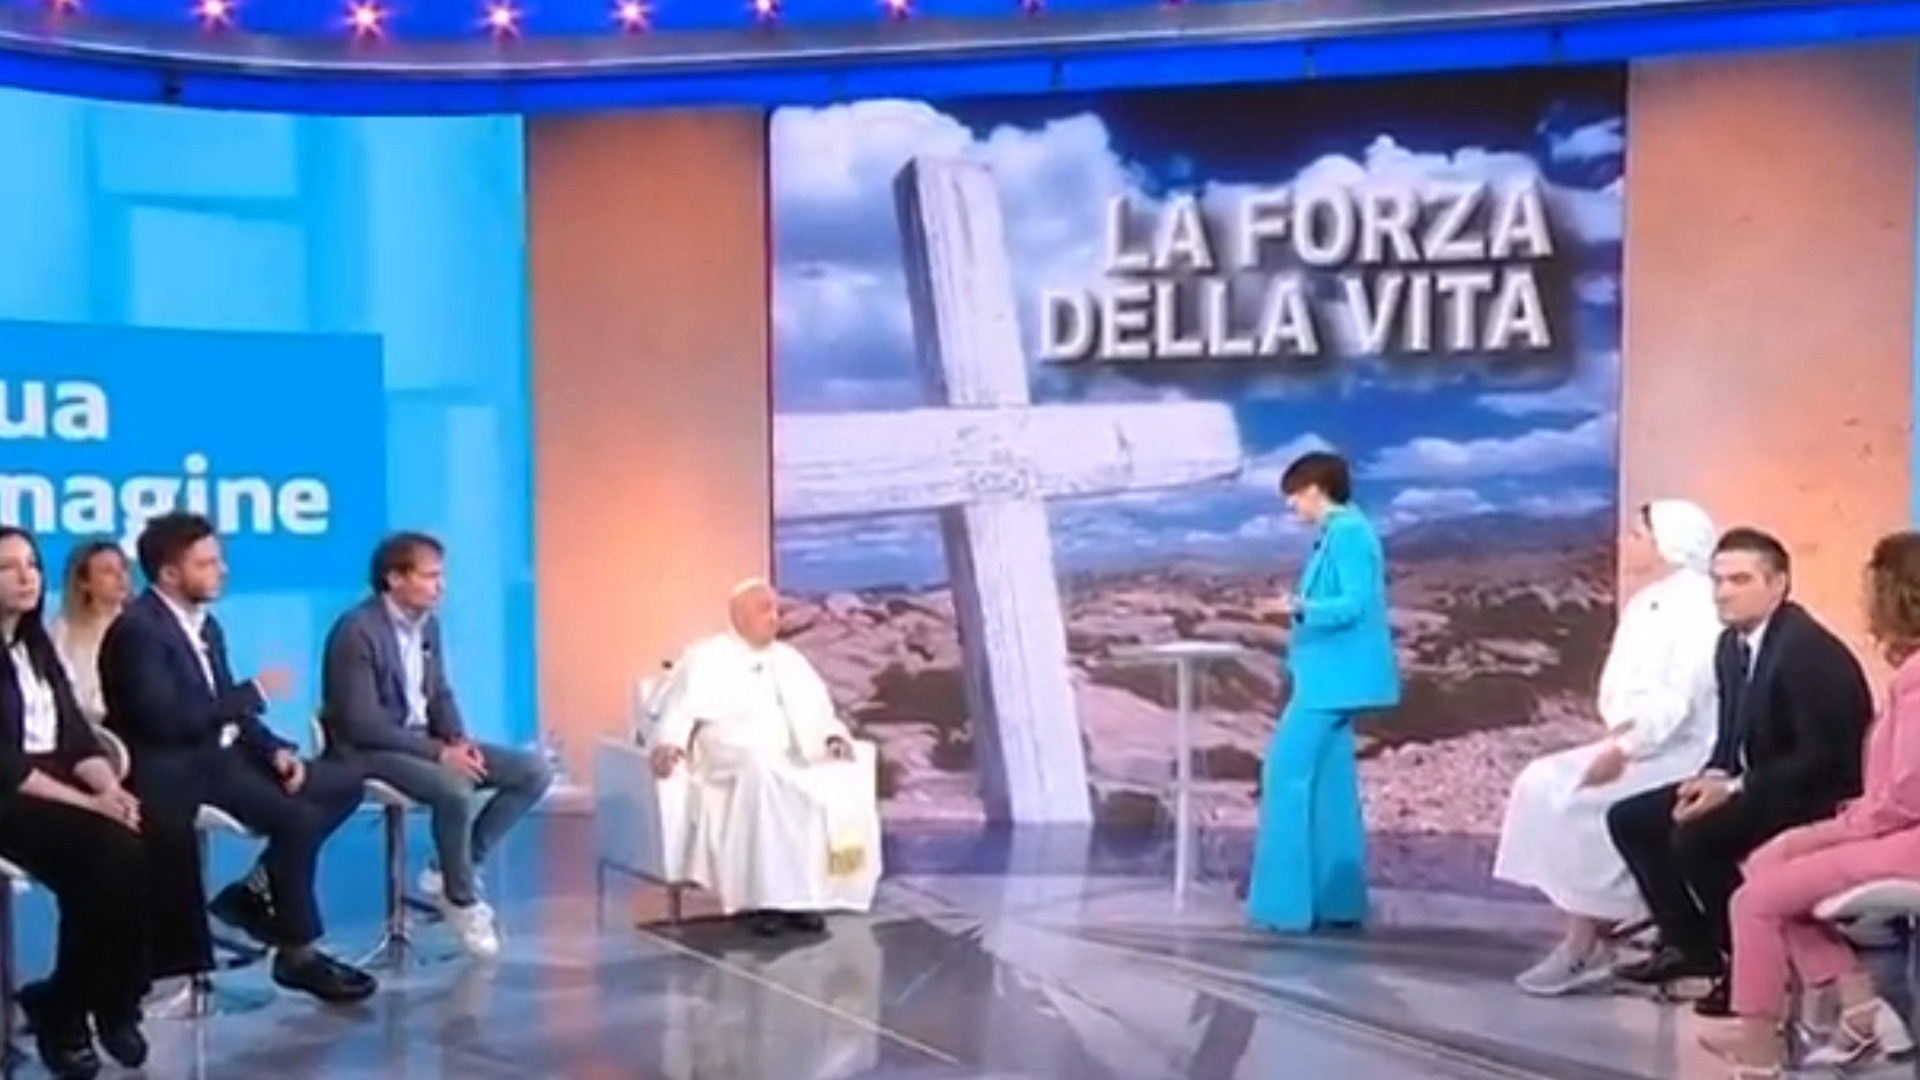 El Papa conversó con periodistas y distintos invitados del programa "A su imagen" de la RAI